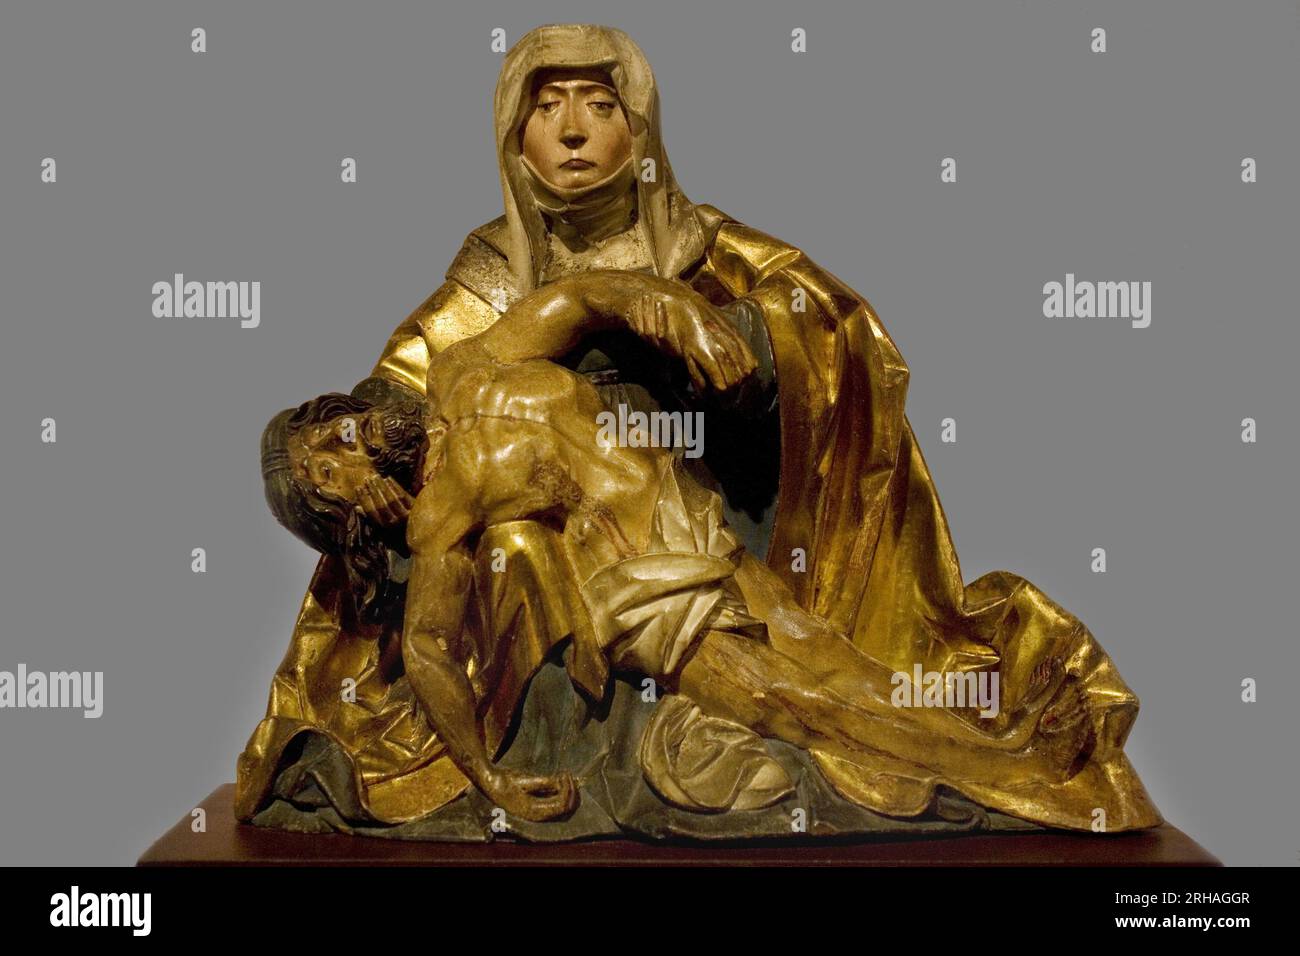 'Vierge de pitie au Christ mort' vers 1510-1520, Region du Tyrol du sud, Skulptur de predelle en bois peint et dore, Konservee au musee Bonnat de Bayonne. Photographie Selva, 2008. . Stockfoto